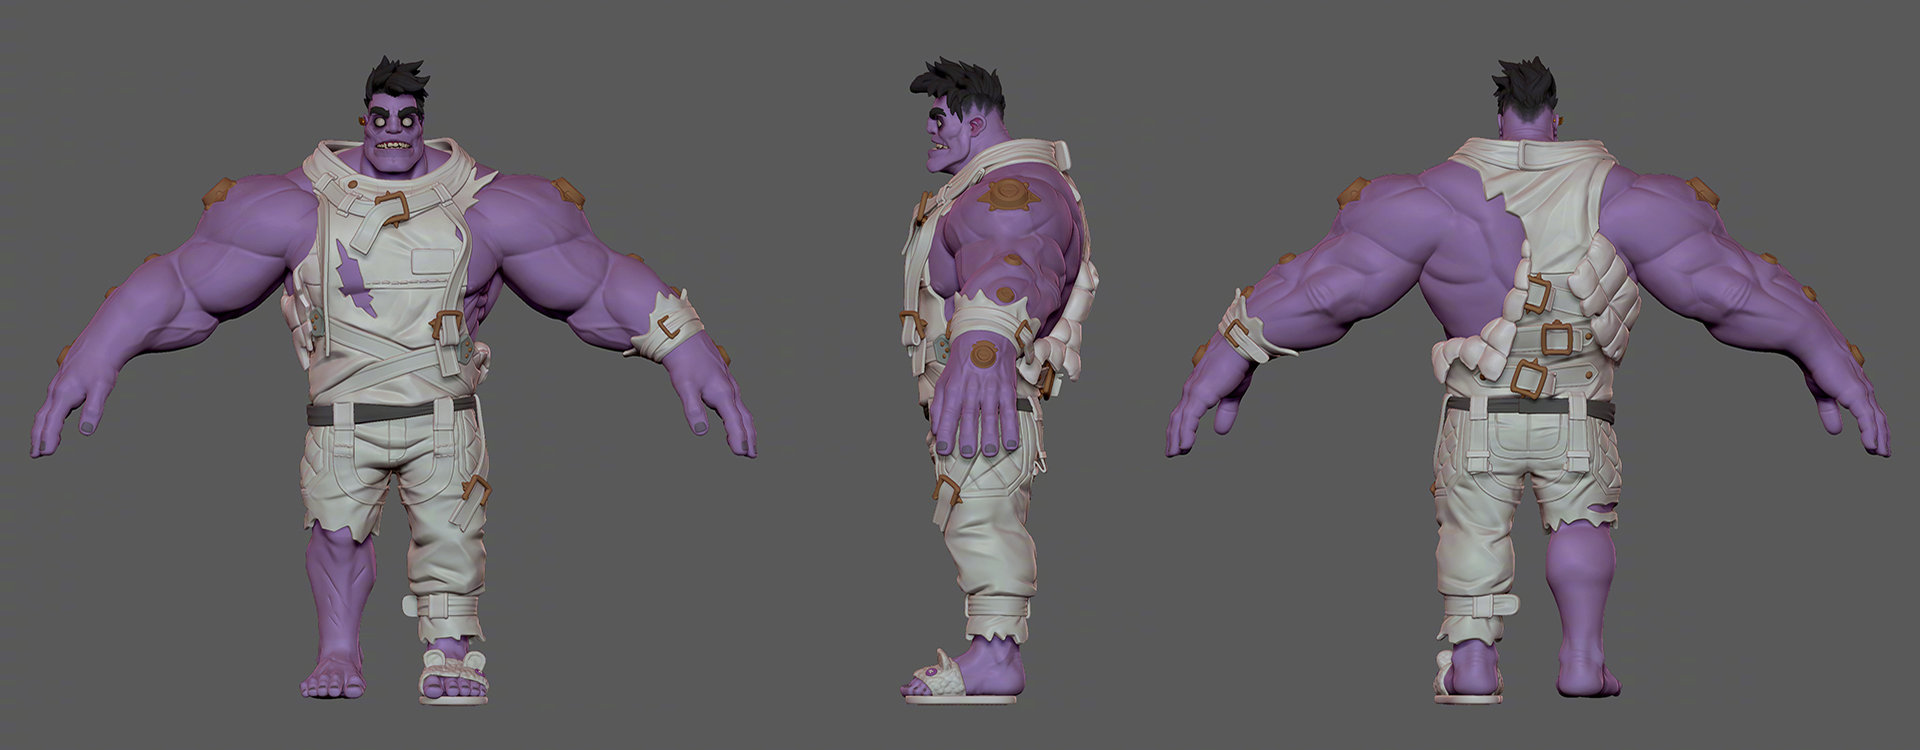 《英雄联盟》蒙多重做模型公开 紫皮爆衣肌肉壮汉